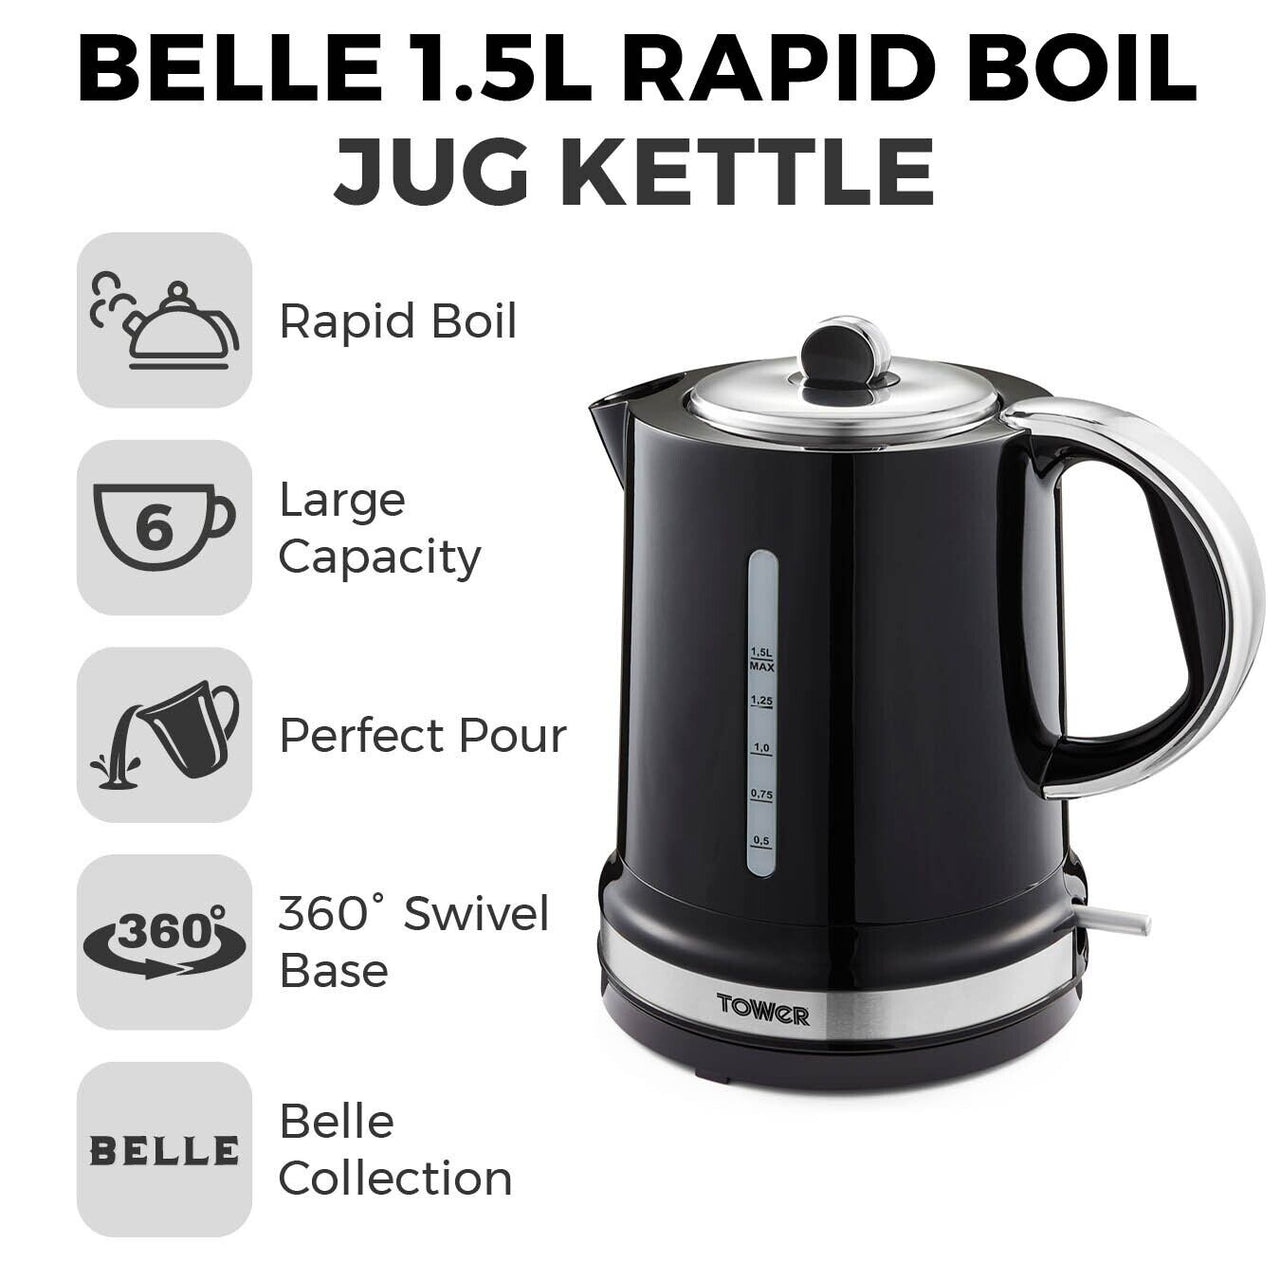 Tower Belle Noir 1.5L 3KW Kettle & 2 Slice Toaster Matching Set in Black